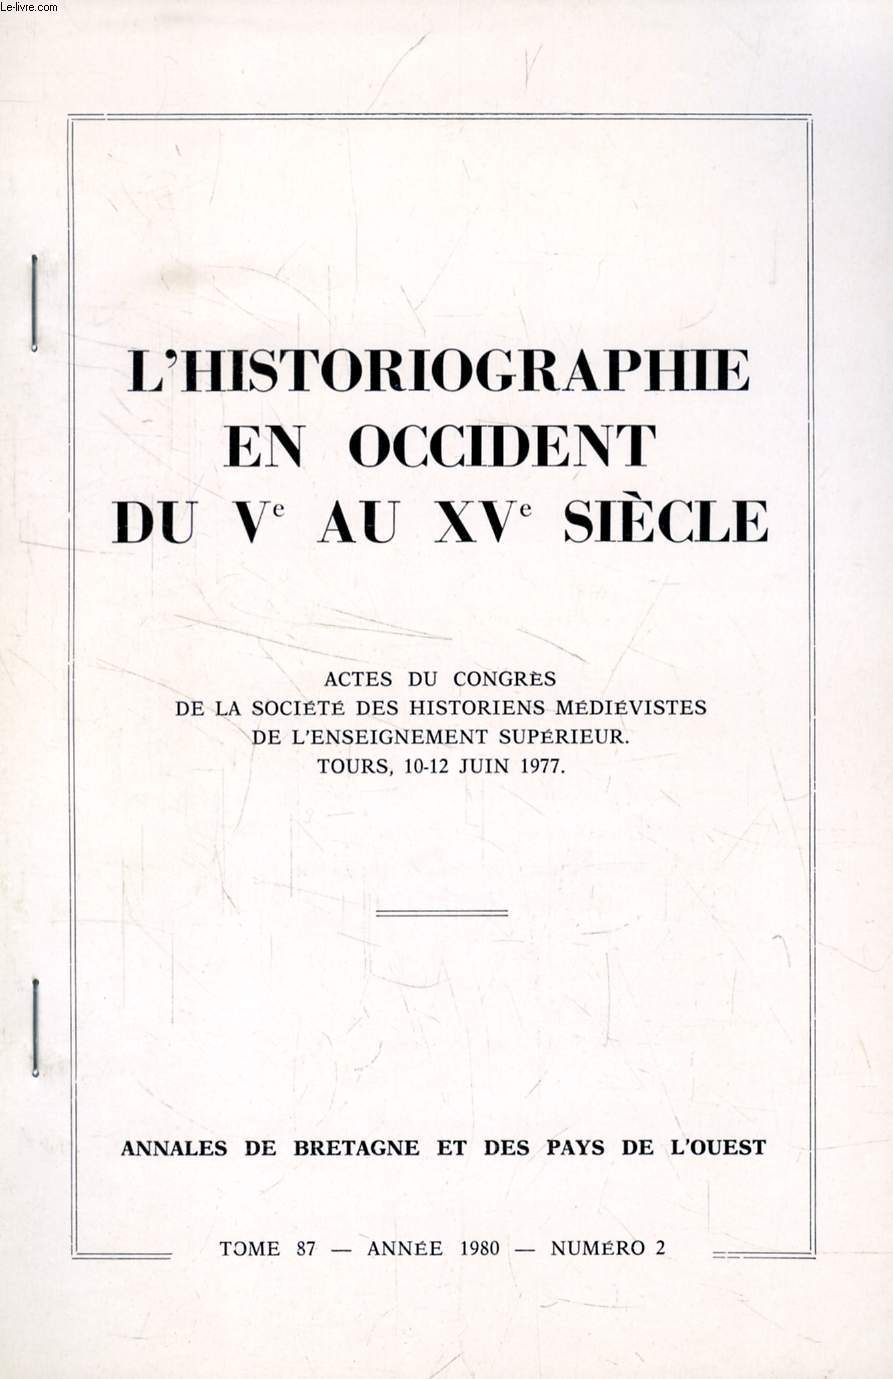 L'HISTORIOGRAPHIE EN OCCIDENT DU Ve AU XVe SIECLE (EXTRAIT), LA 'CHRONIQUE' DE GUILLAUME DE PUYLAURENS